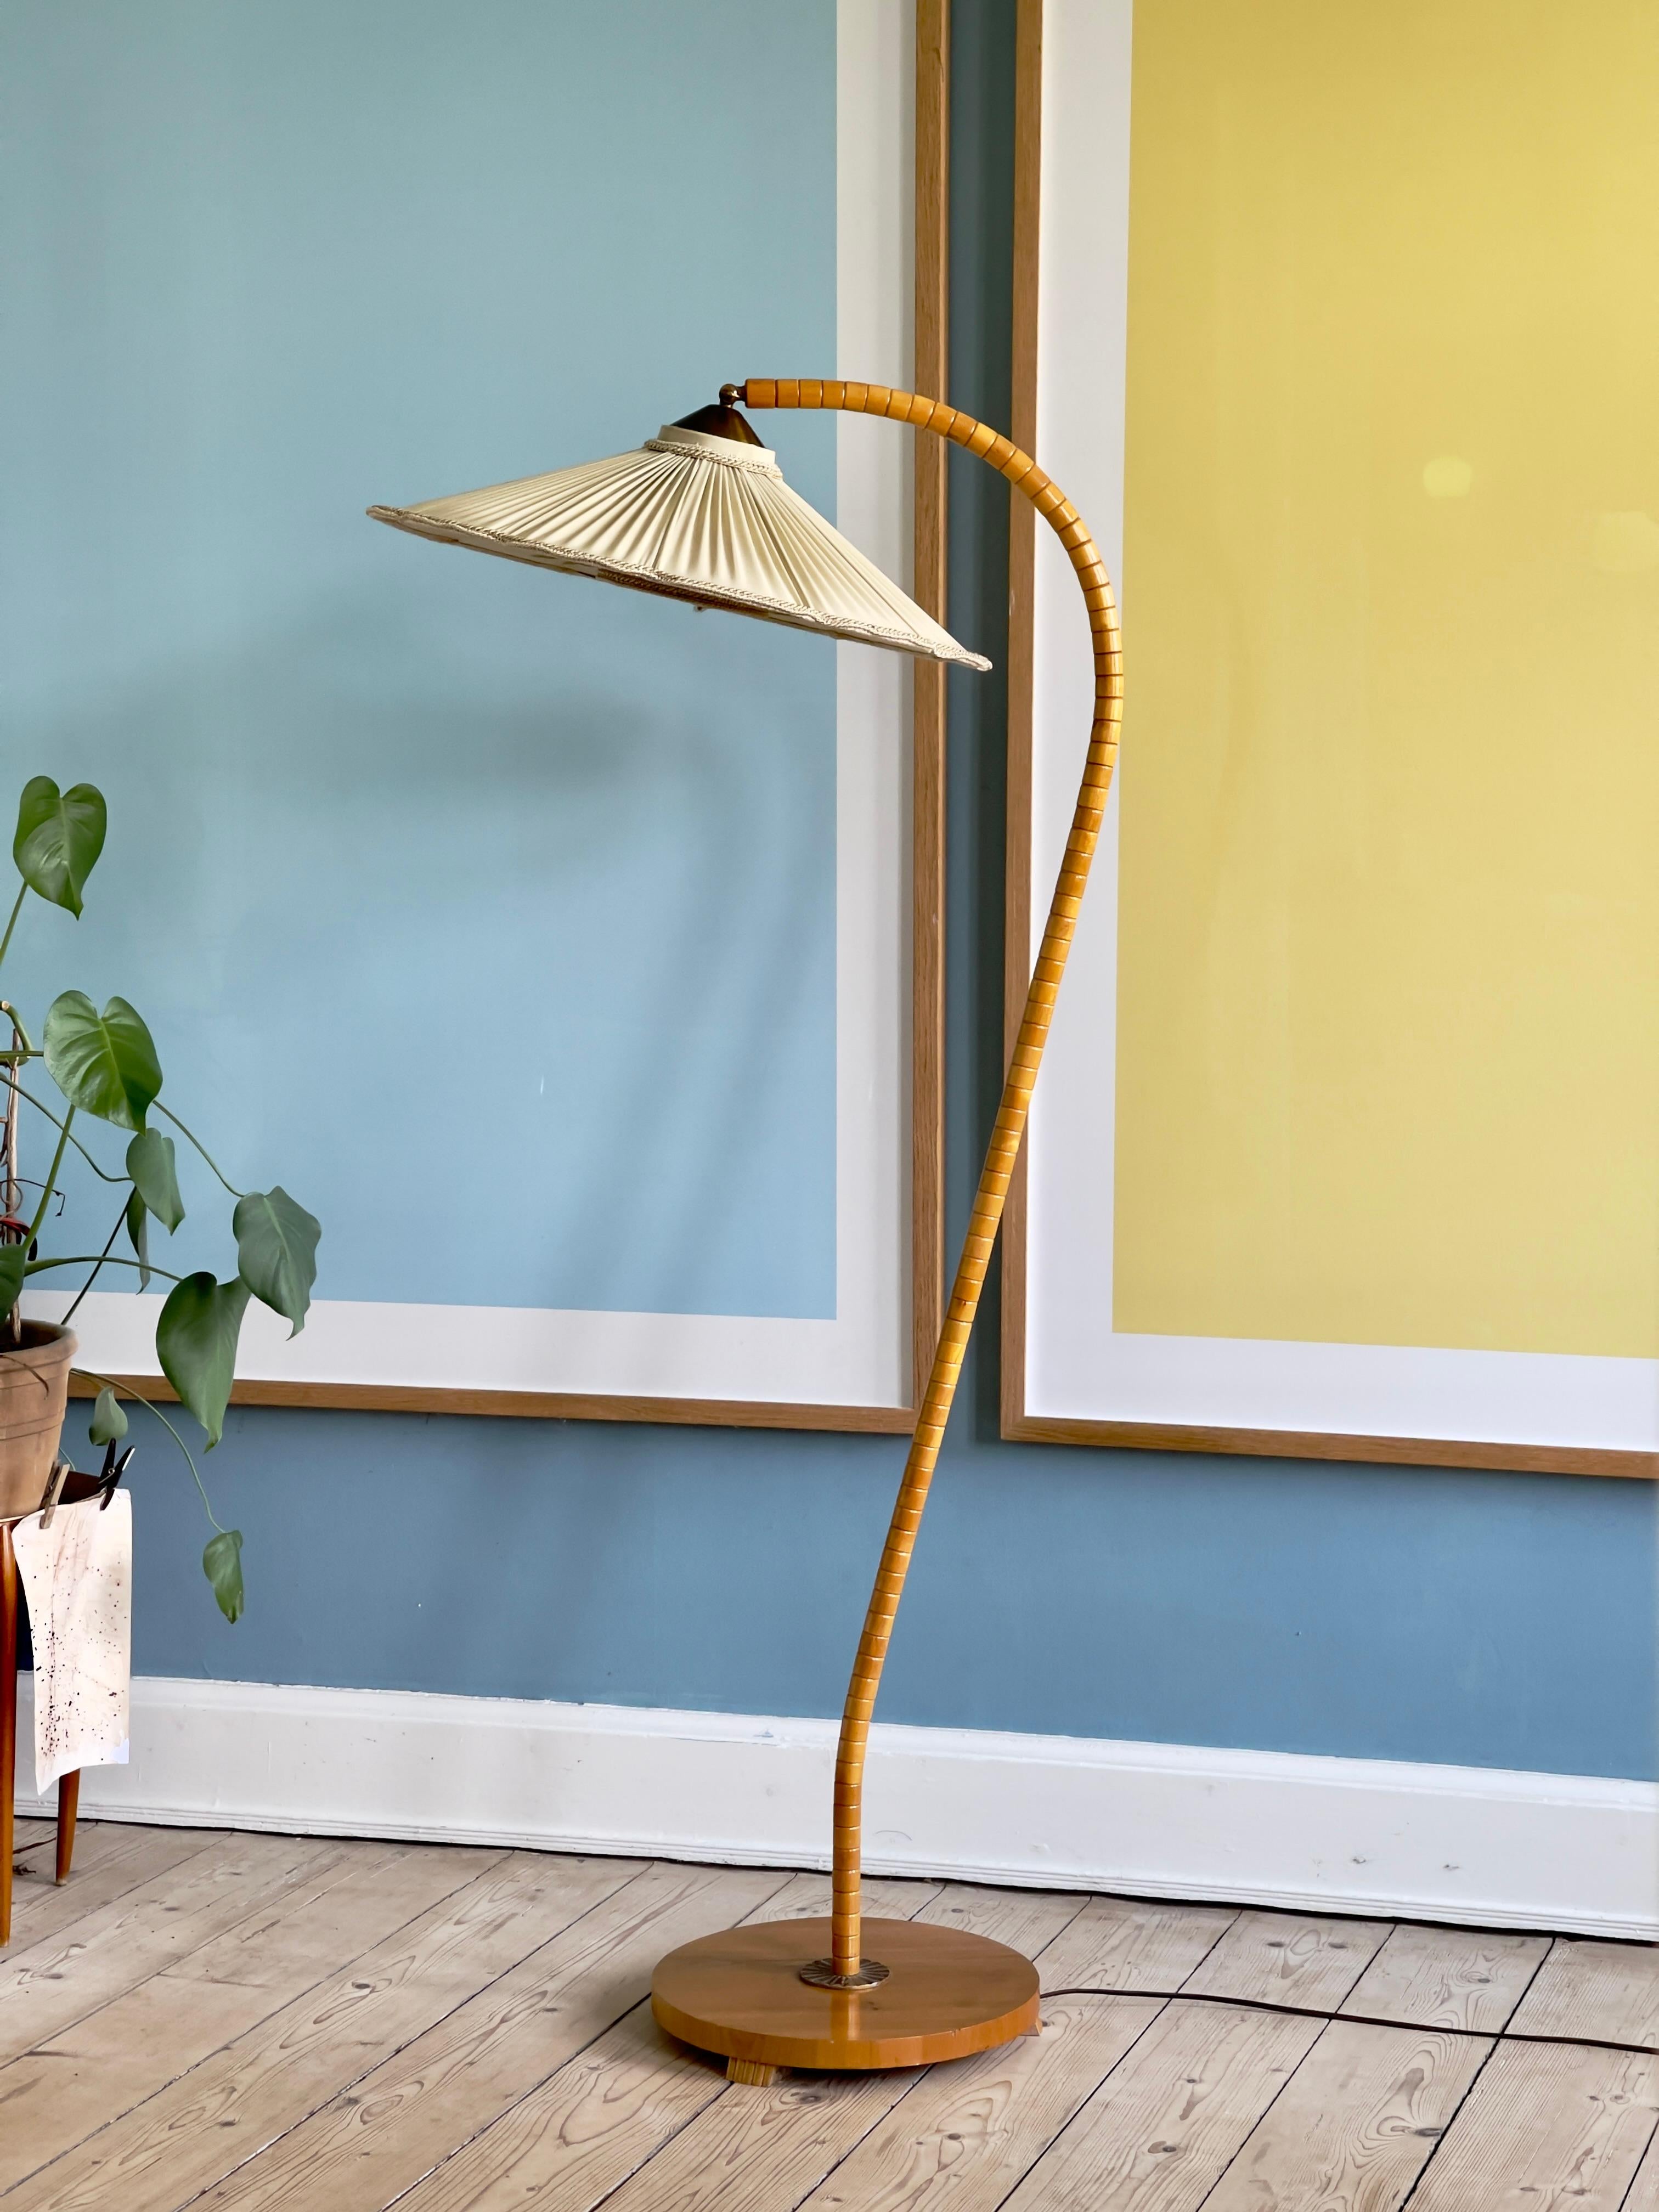 Seltene originale schwedische moderne Stehlampe aus den 1940er Jahren aus massivem, goldfarben patiniertem Ulmenholz mit schönem handgemaltem Vogelmotiv auf dem Leinenstoffschirm. Der Schirm ist mit einer filigranen Messingbefestigung montiert. Dem